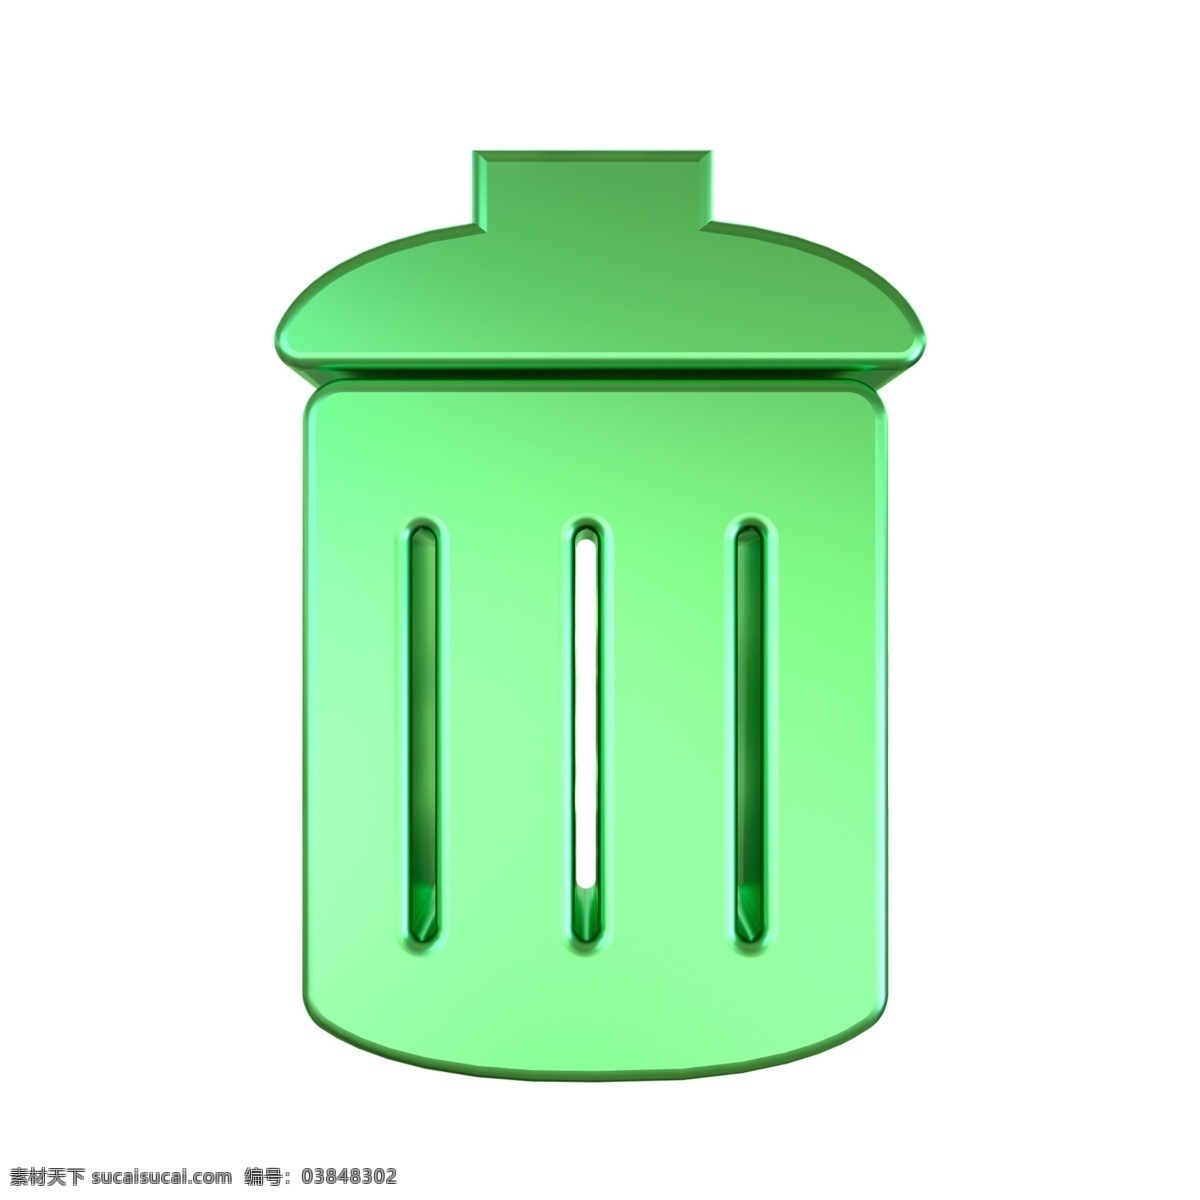 c4d 绿色 金属 质感 垃圾桶 立体 图标 3d 金属质感 垃圾桶图标 立体图标 平面海报配图 网页ui配图